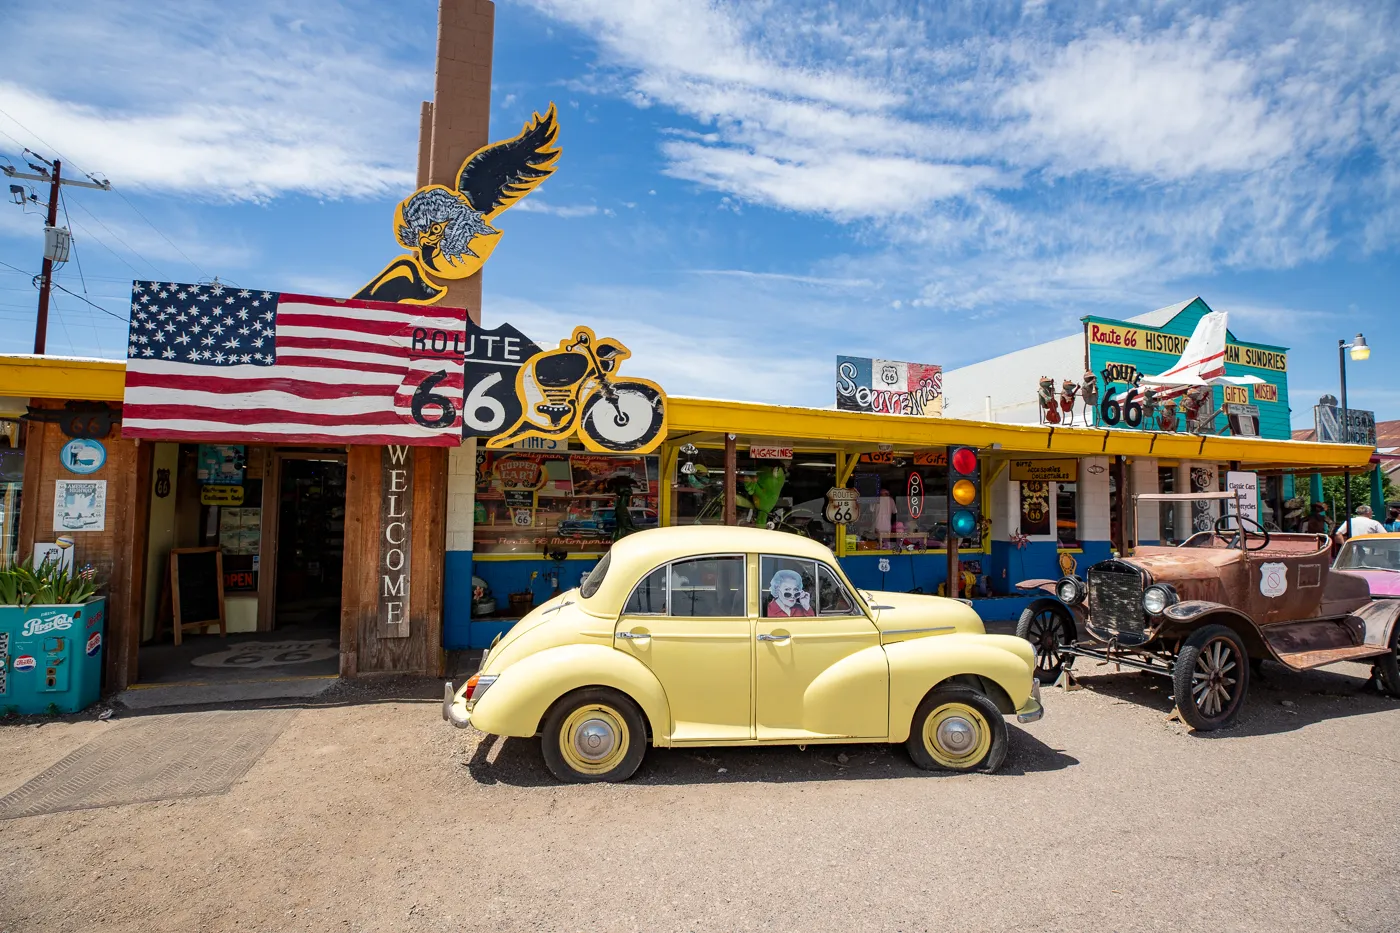 Copper Cart and Route 66 Motoporium in Seligman, Arizona Route 66 roadside attraction